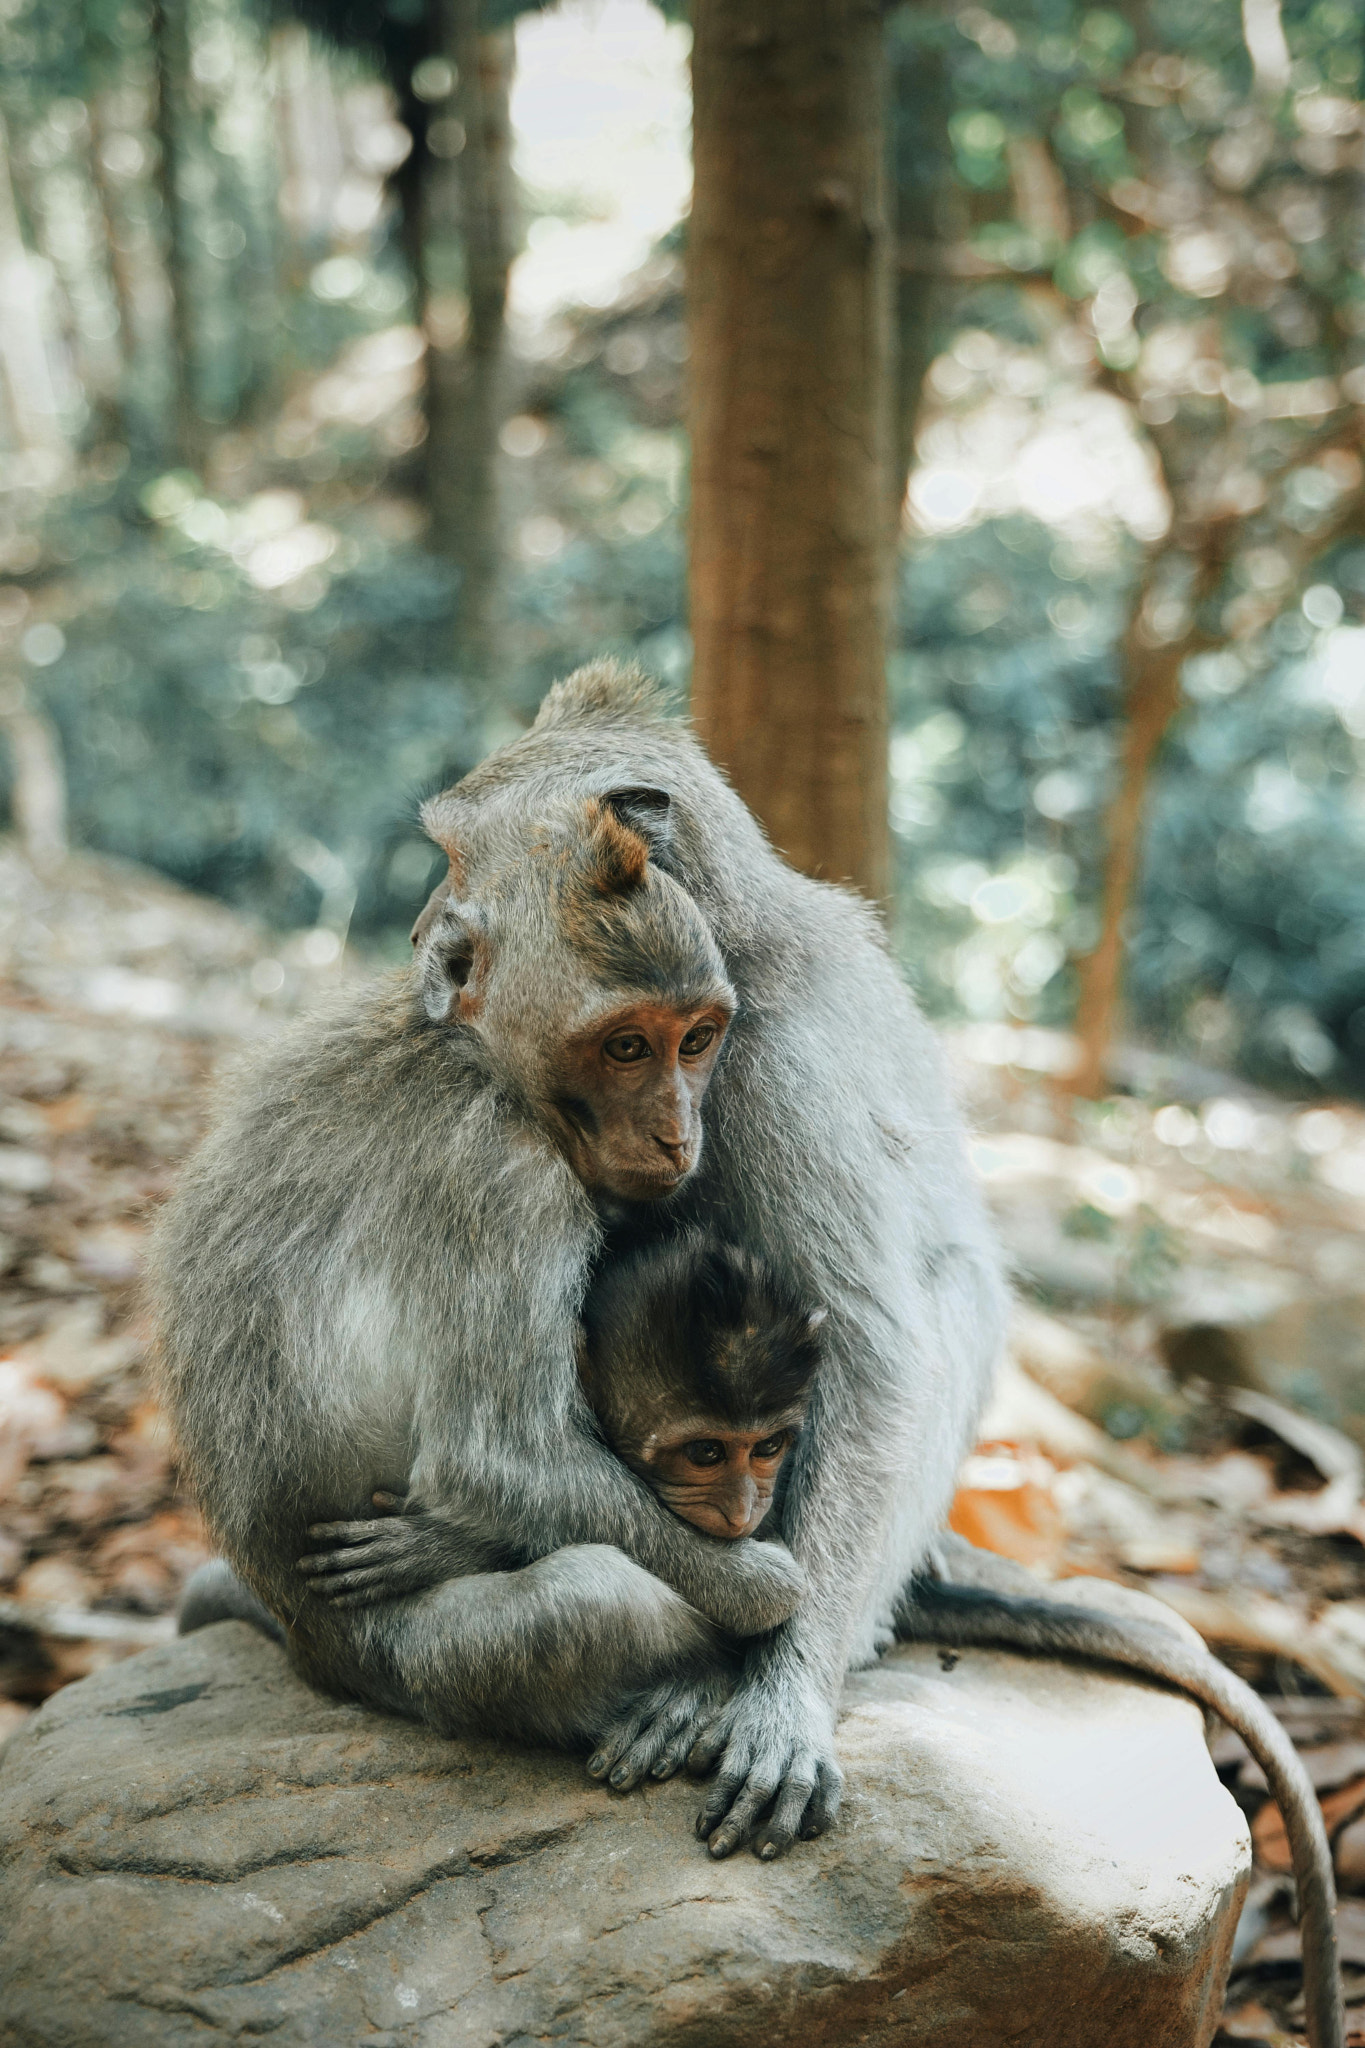 a family of monkeys hugging